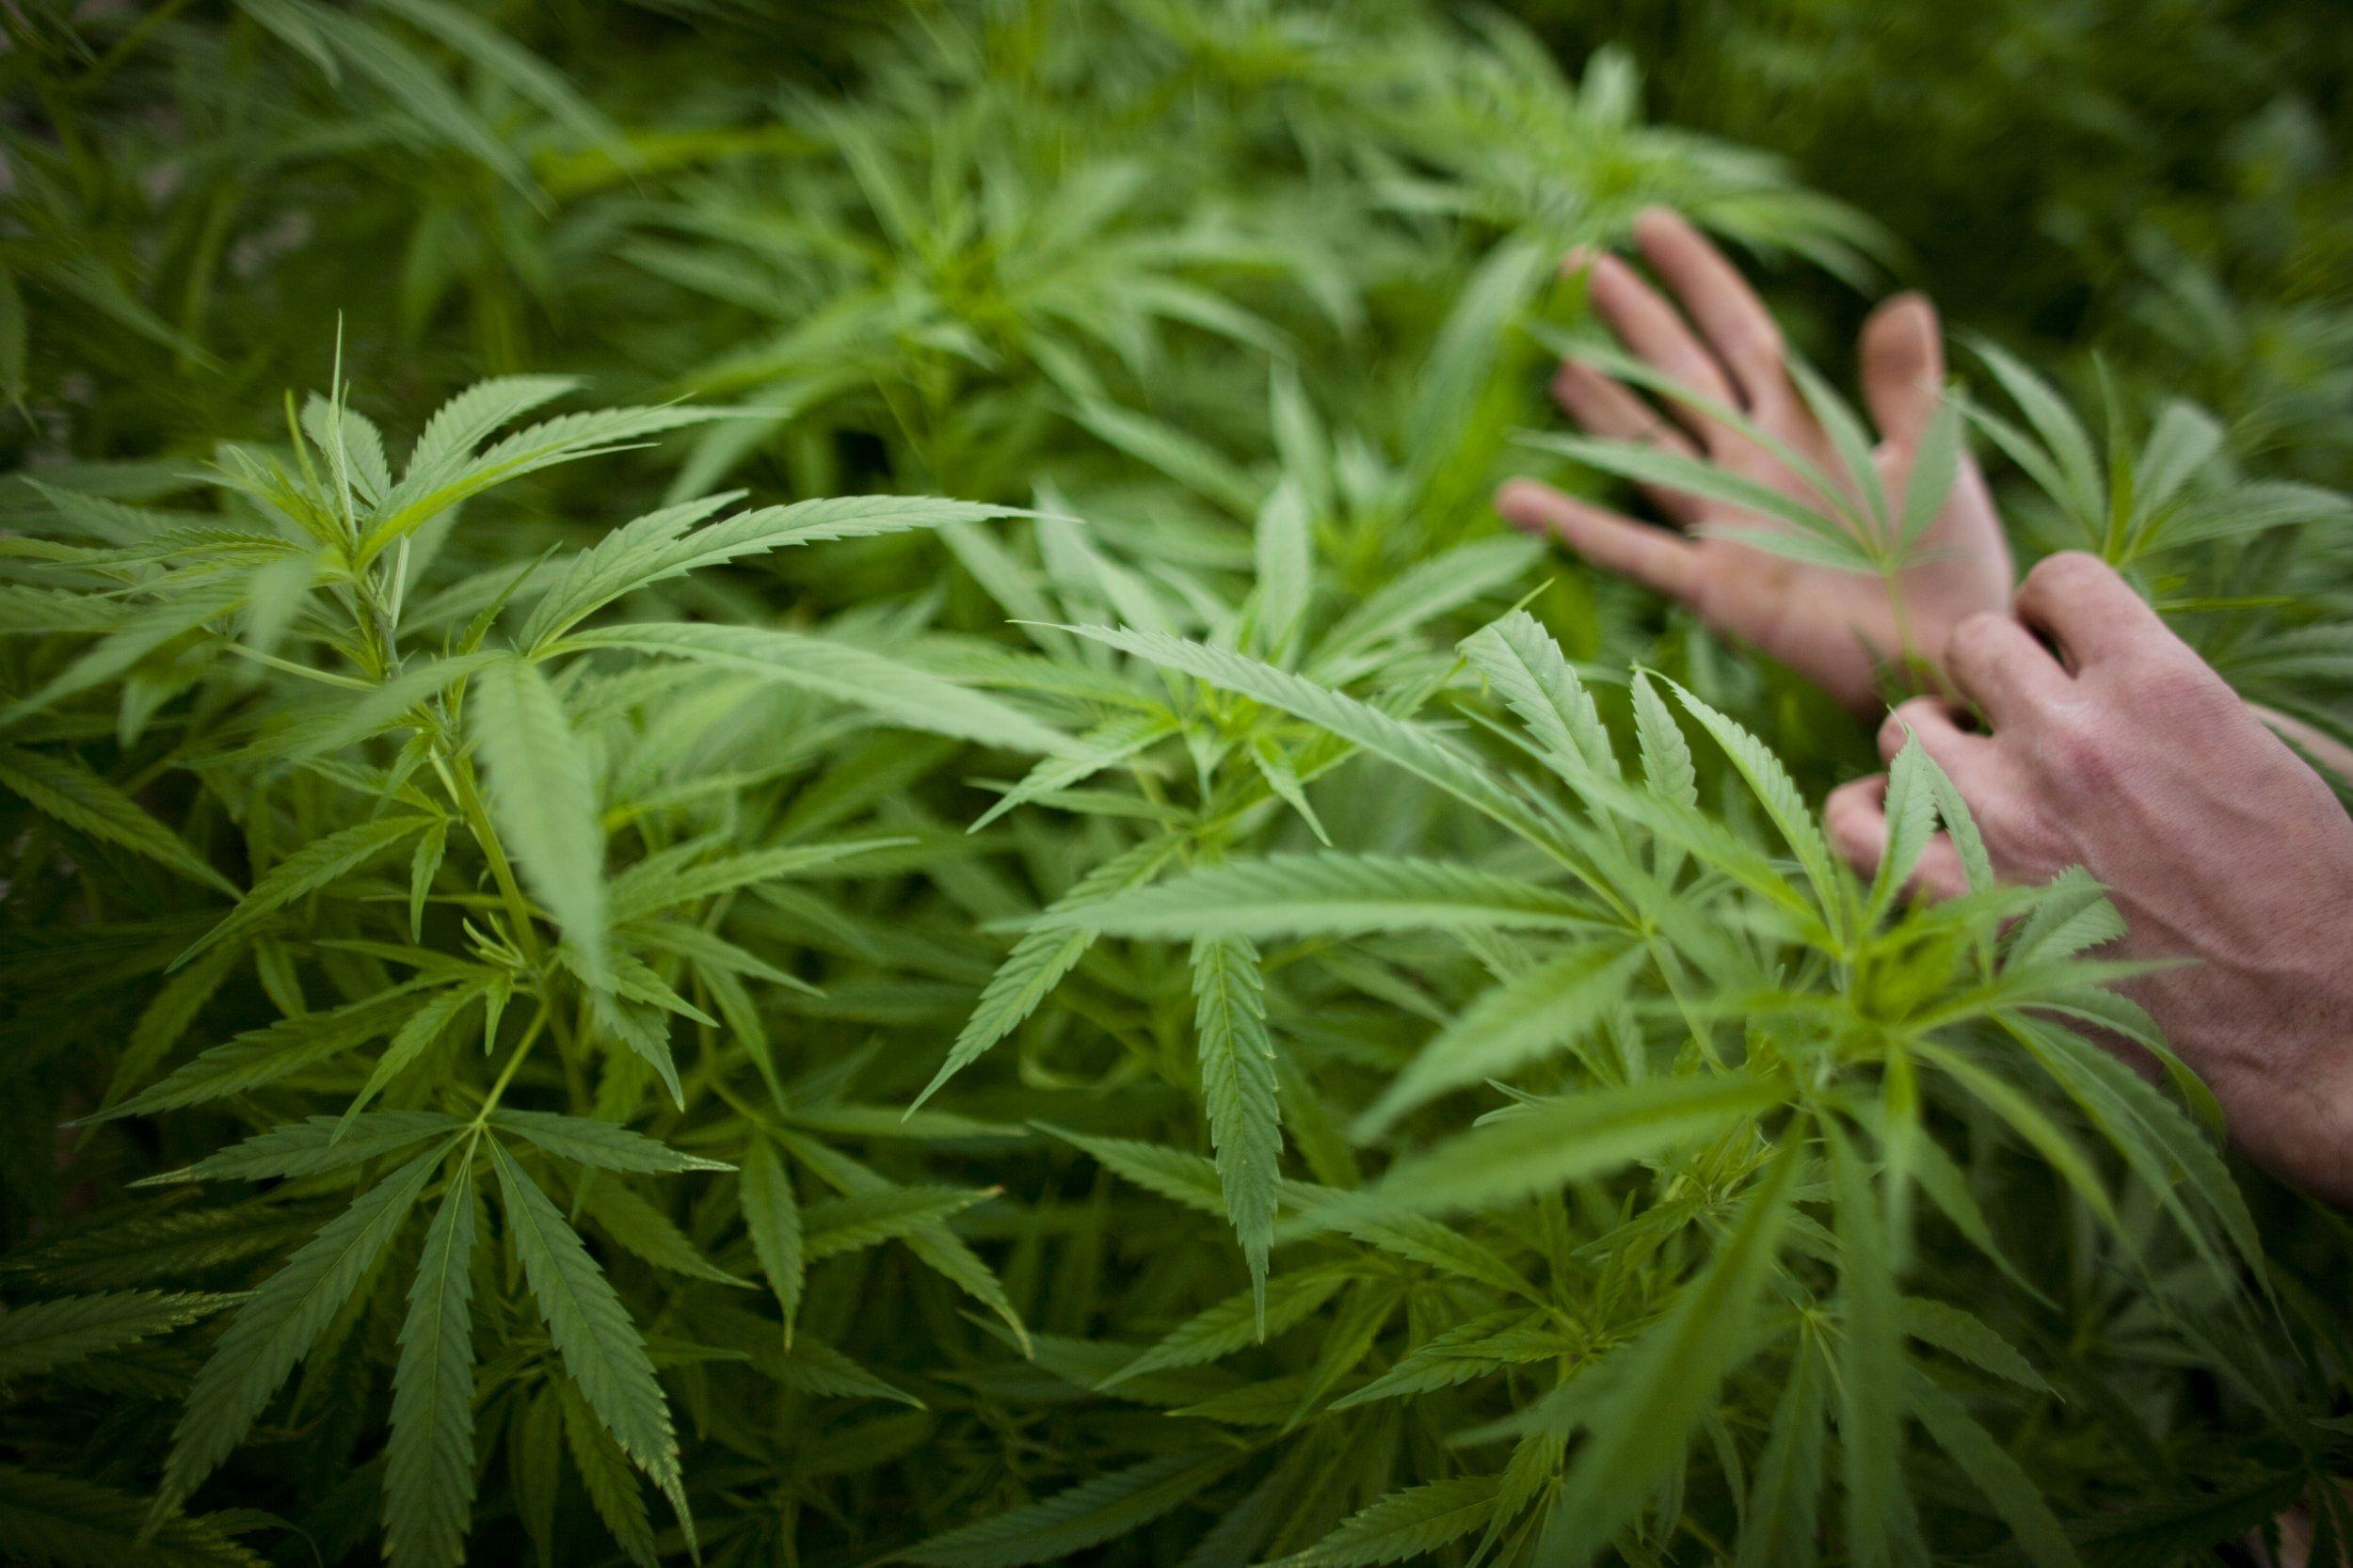 Акции компании по выращиванию марихуаны выросли на 24%